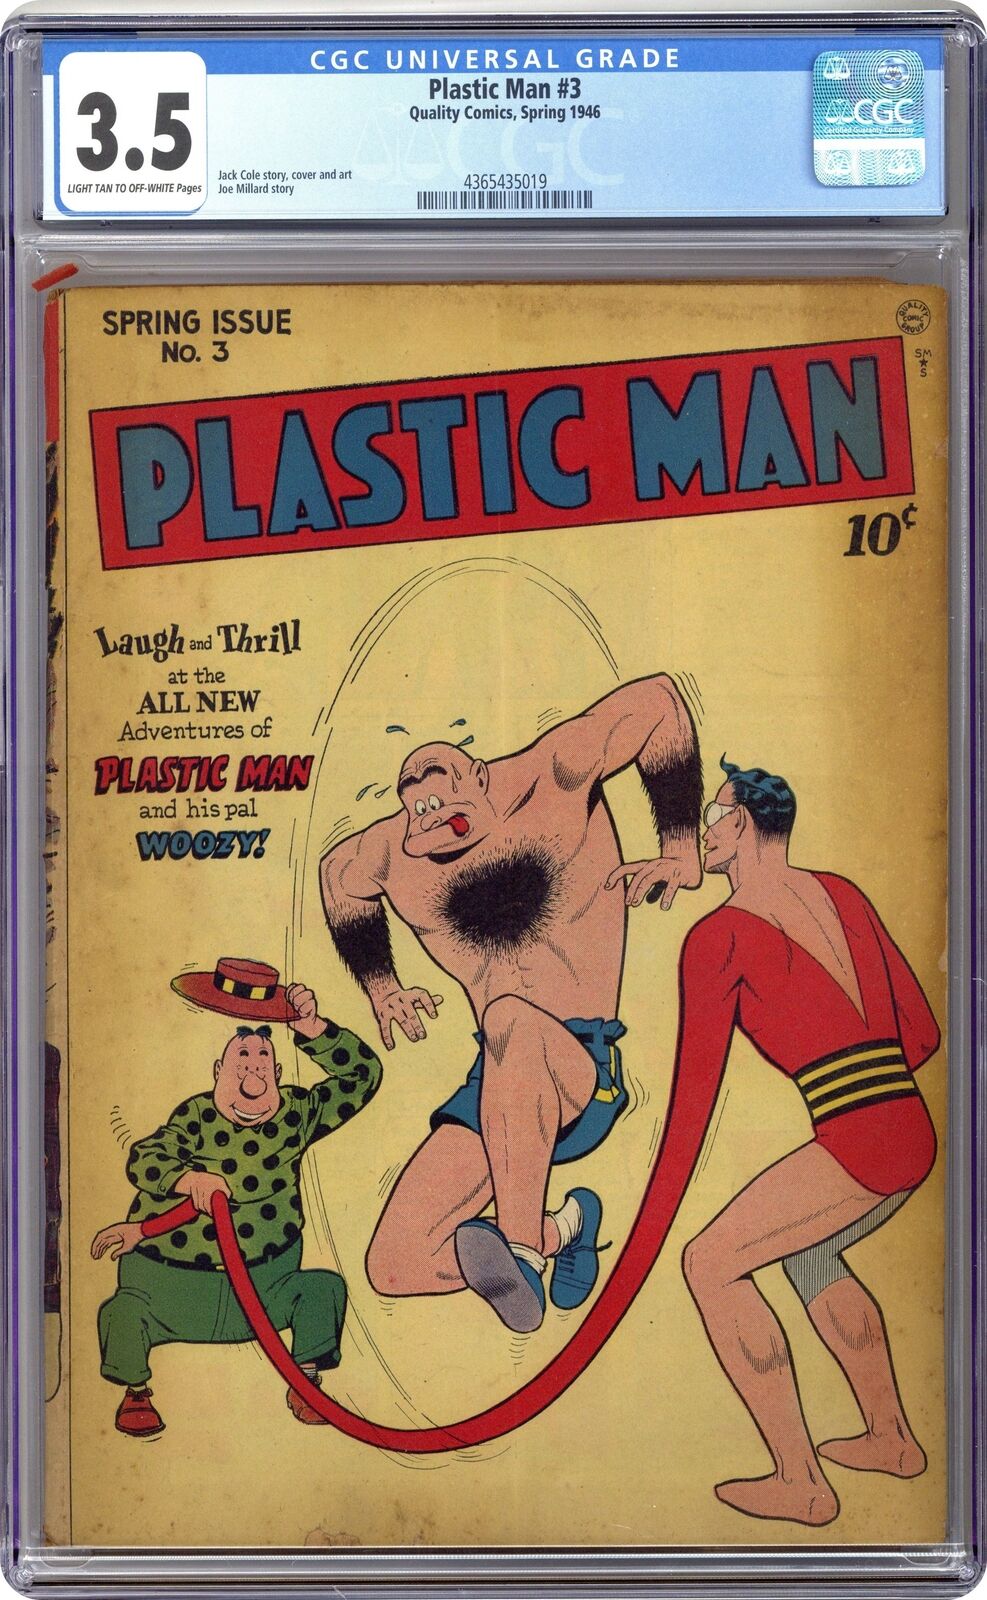 Plastic Man #3 CGC 3.5 1946 4365435019